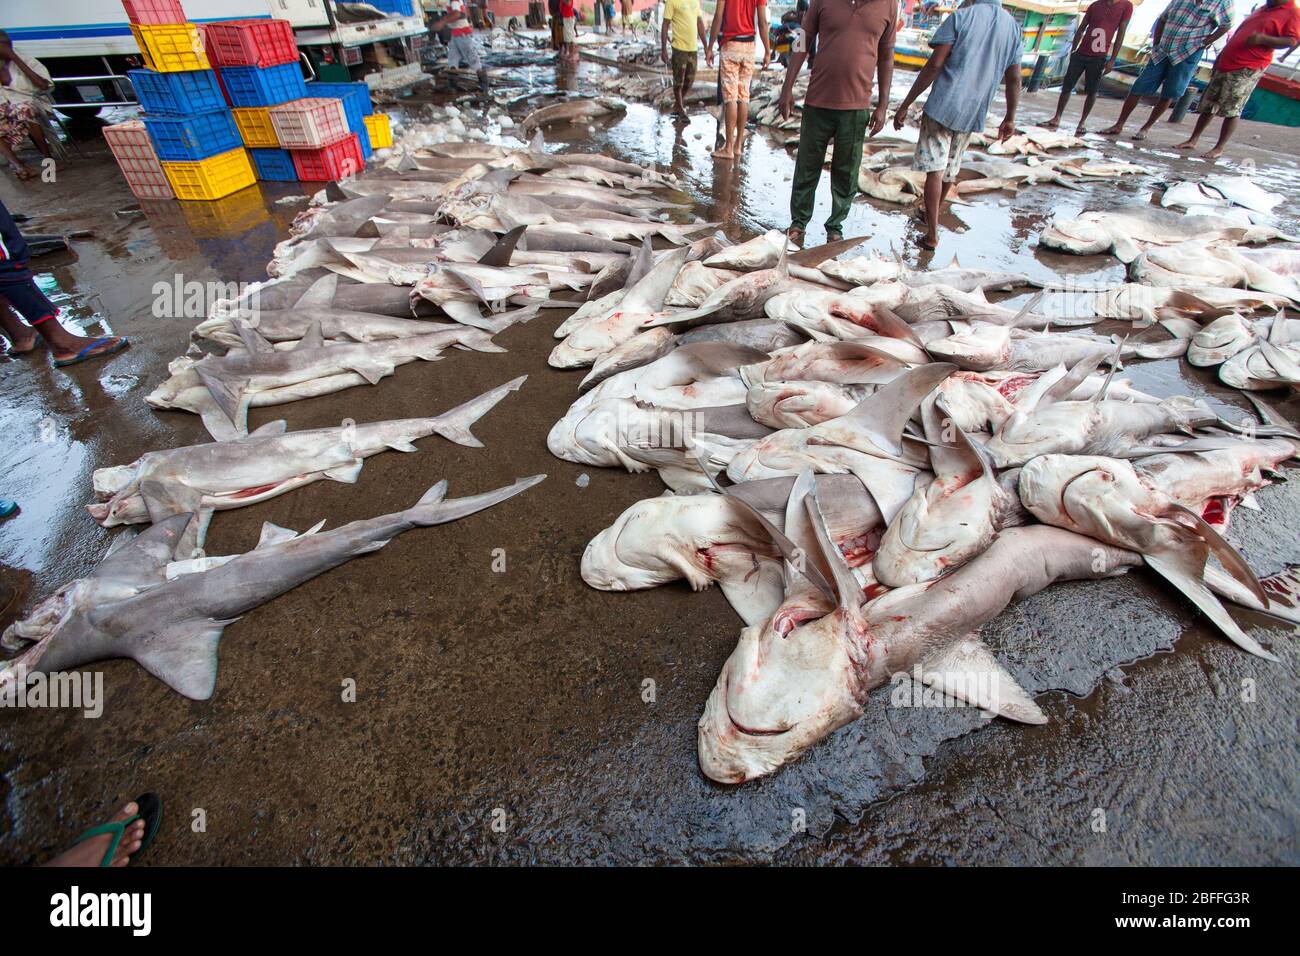 Fischmarkt. Fisch auf dem Boden. Haie tot auf dem Boden. Eine Reihe von großen, sektionierten Fischen. Ort: Negombo, Sri Lanka. Stockfoto